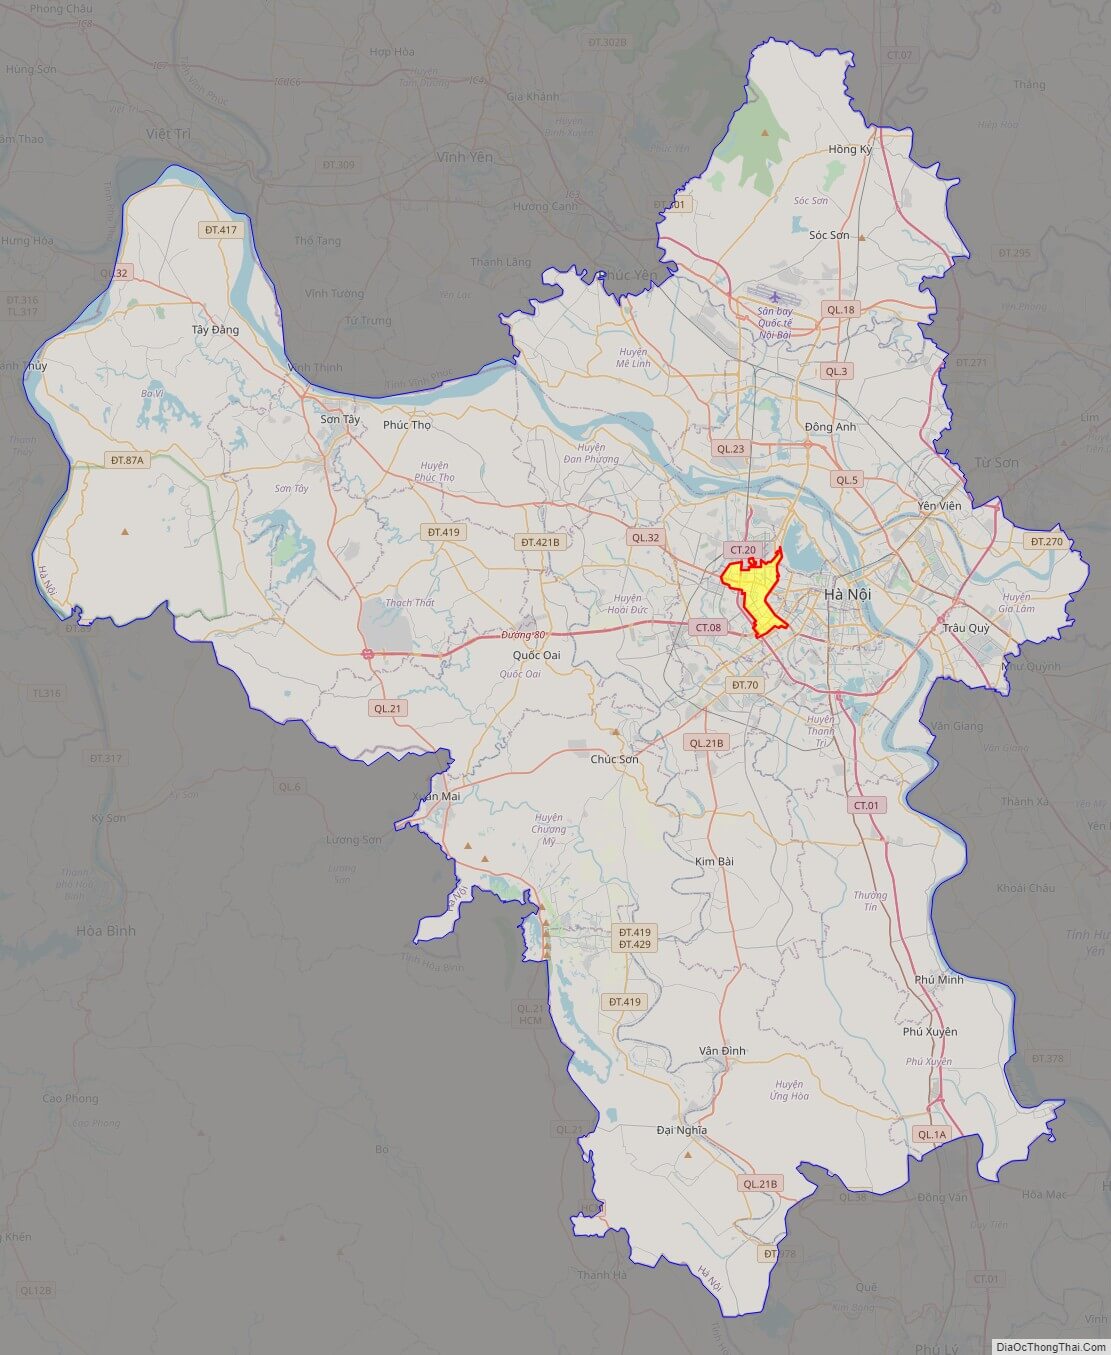 Bạn muốn khám phá Hà Nội theo những quận khác nhau? Bản đồ quận Hà Nội chính xác và thân thiện với người dùng sẽ giúp bạn tìm đường đến mọi điểm đến một cách dễ dàng. Hãy truy cập vào hình ảnh để khám phá một Hà Nội mới lạ!